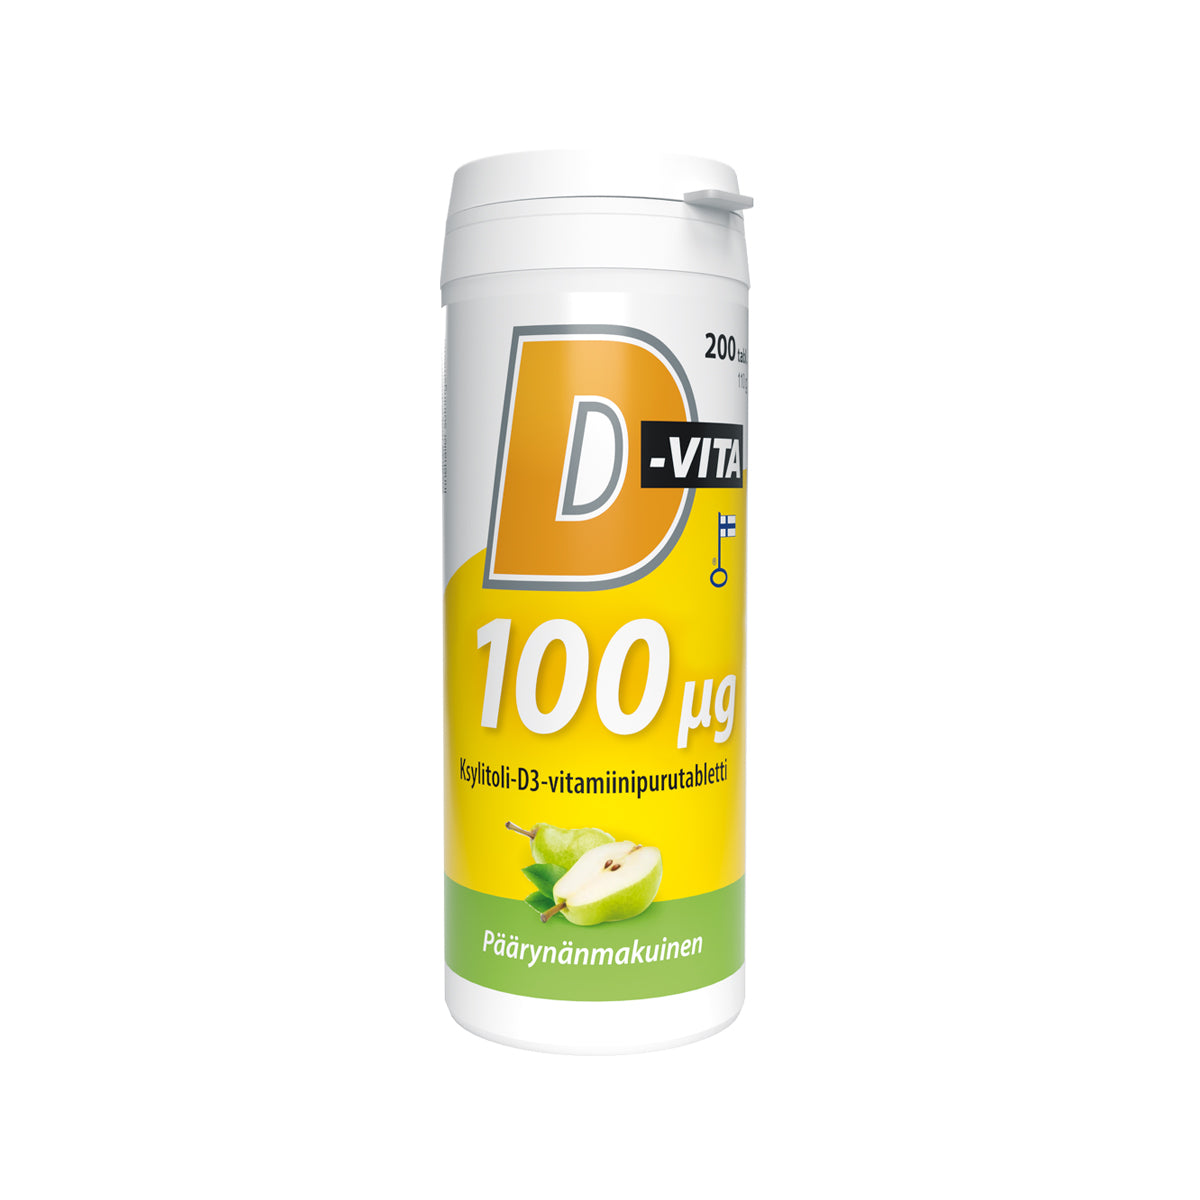 D-Vita 100 µg - Päärynänmakuinen purutabletti 200 tabl.